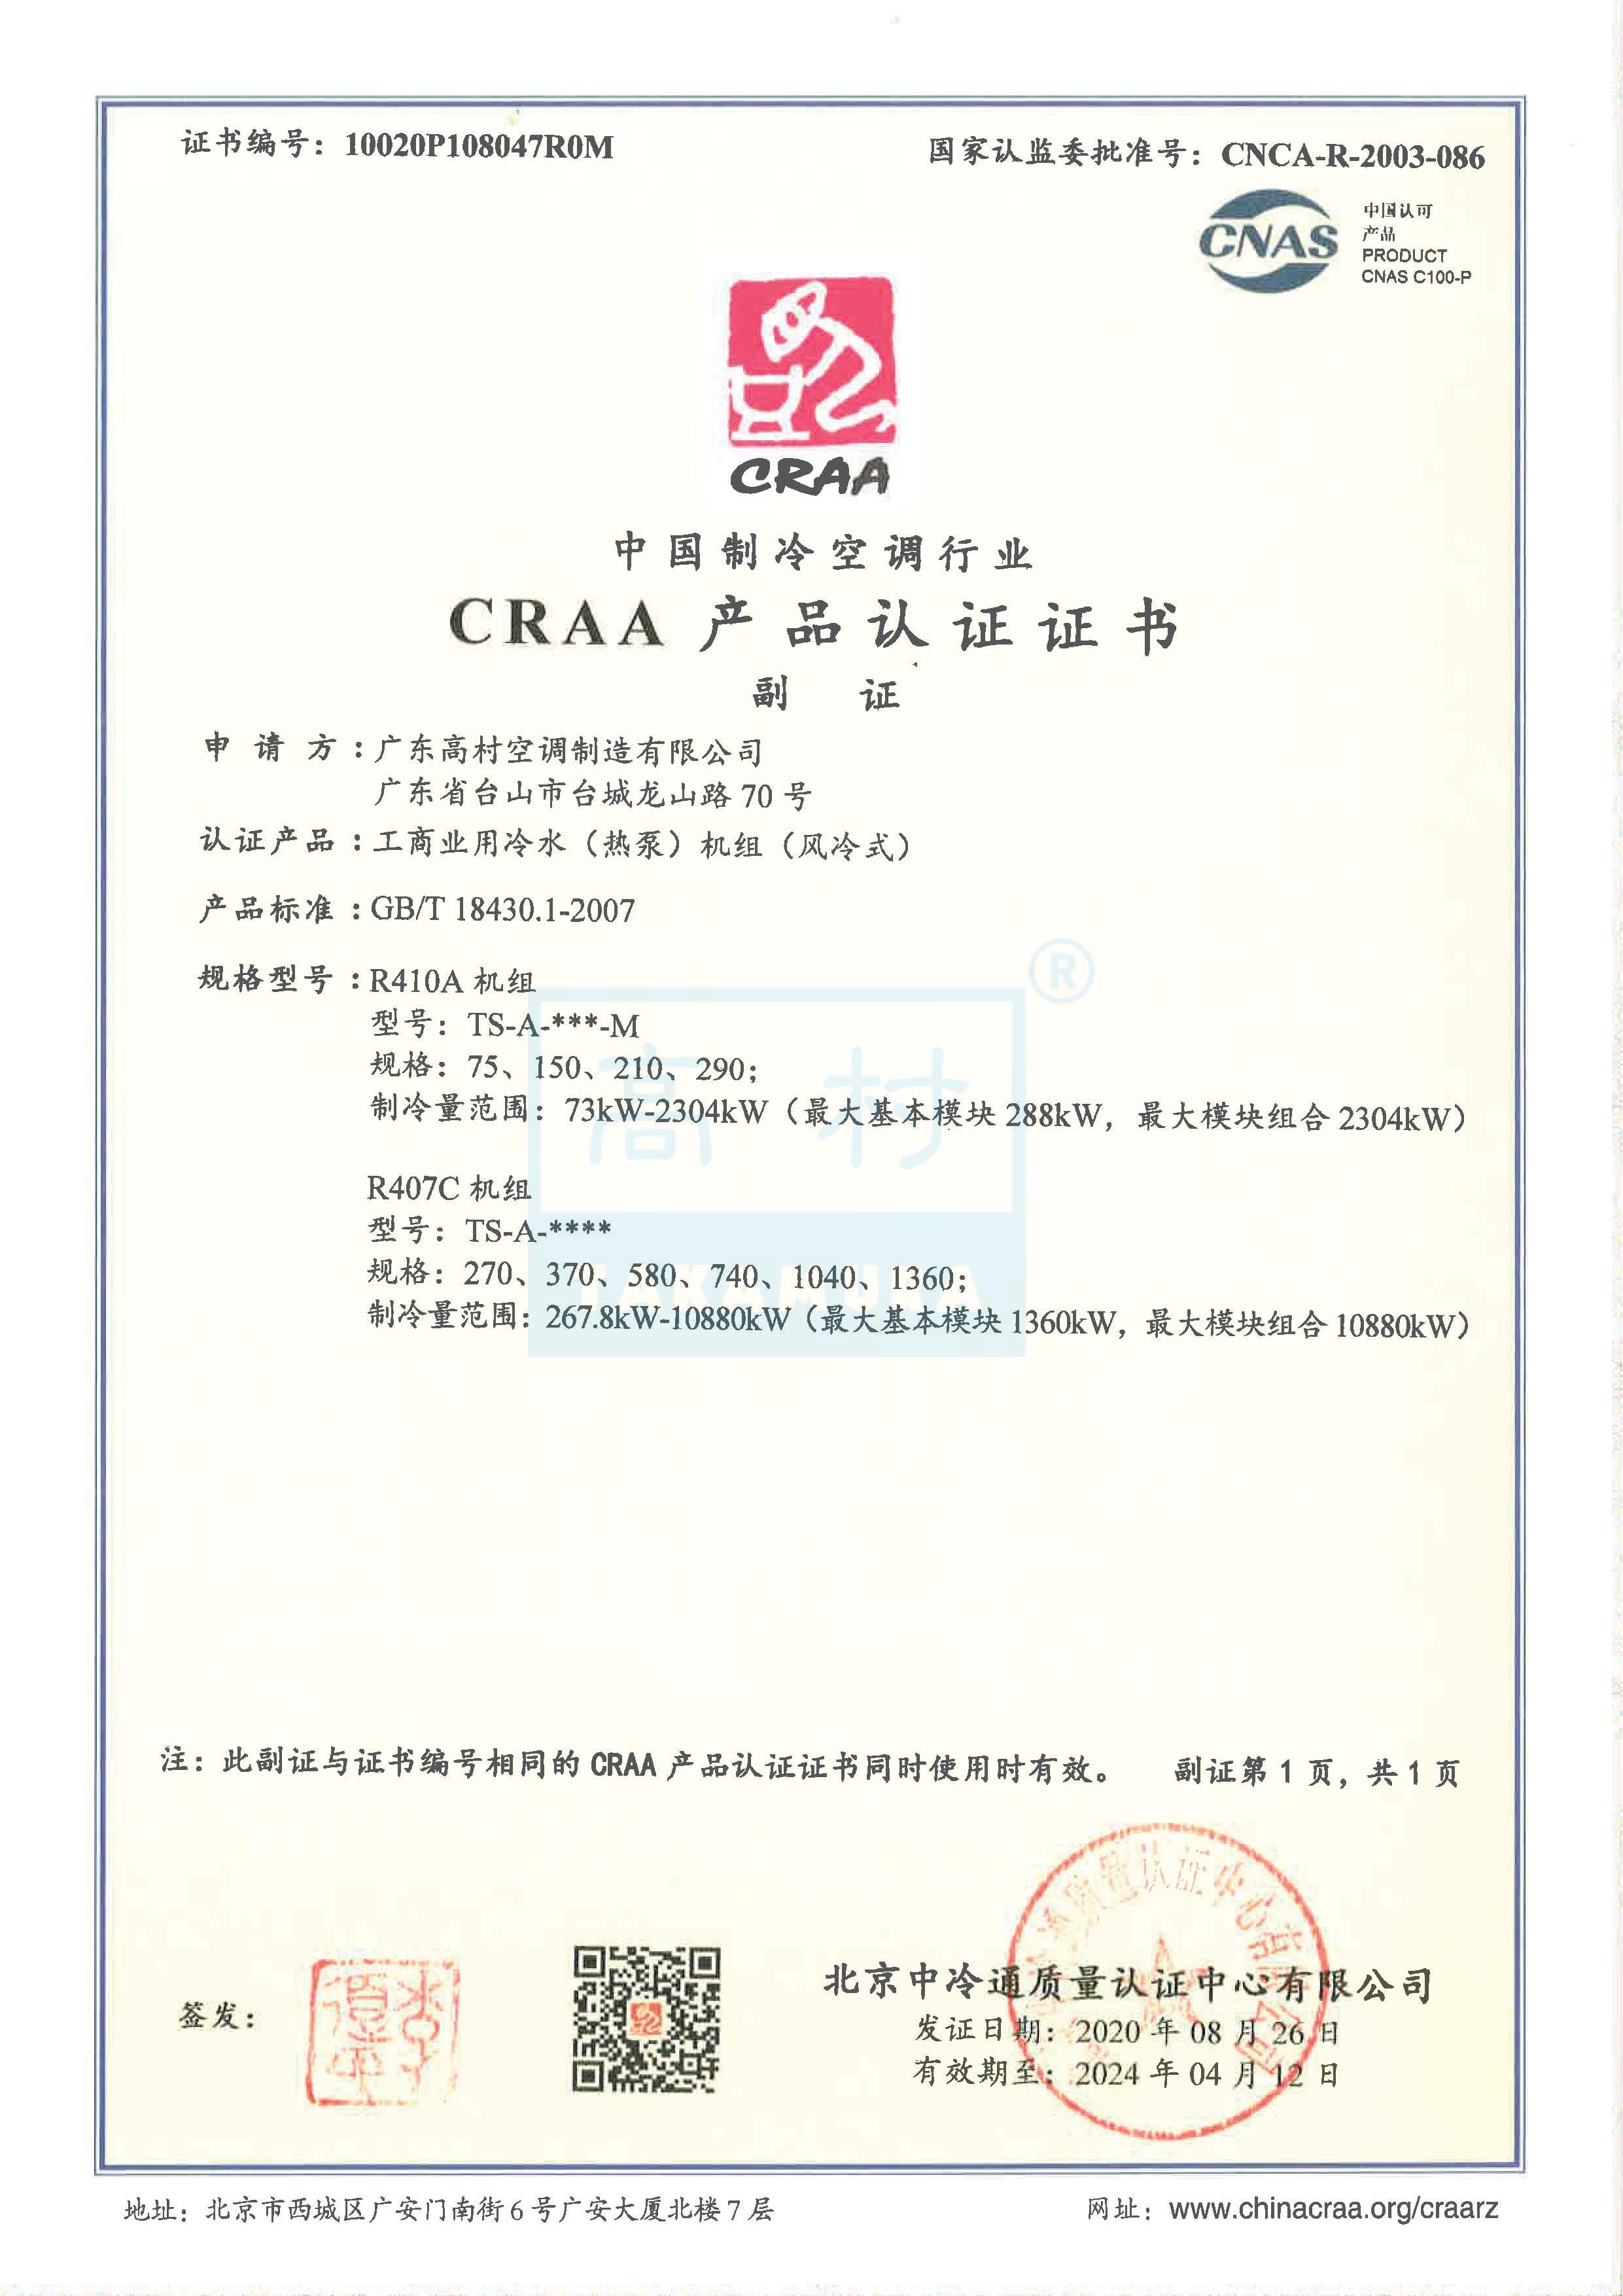 2020-2024 CRAA产品认证证书-TS-A系列_2